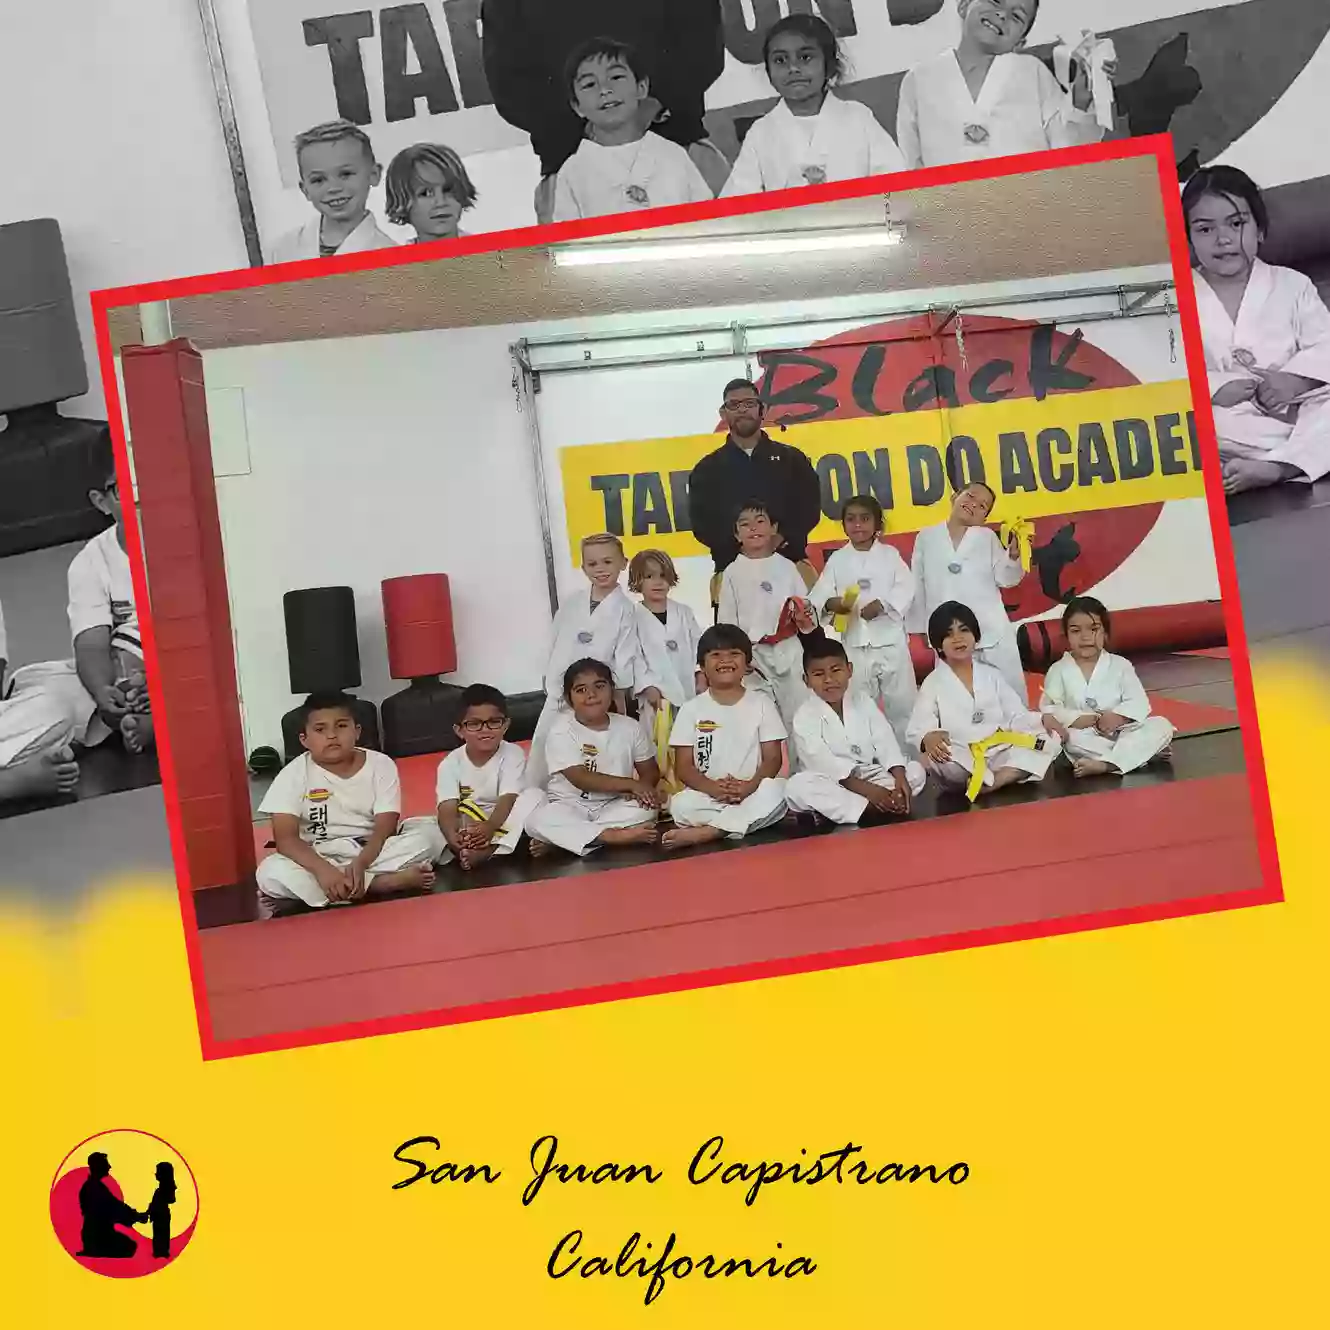 Black Belt Tae Kwon Do Academy